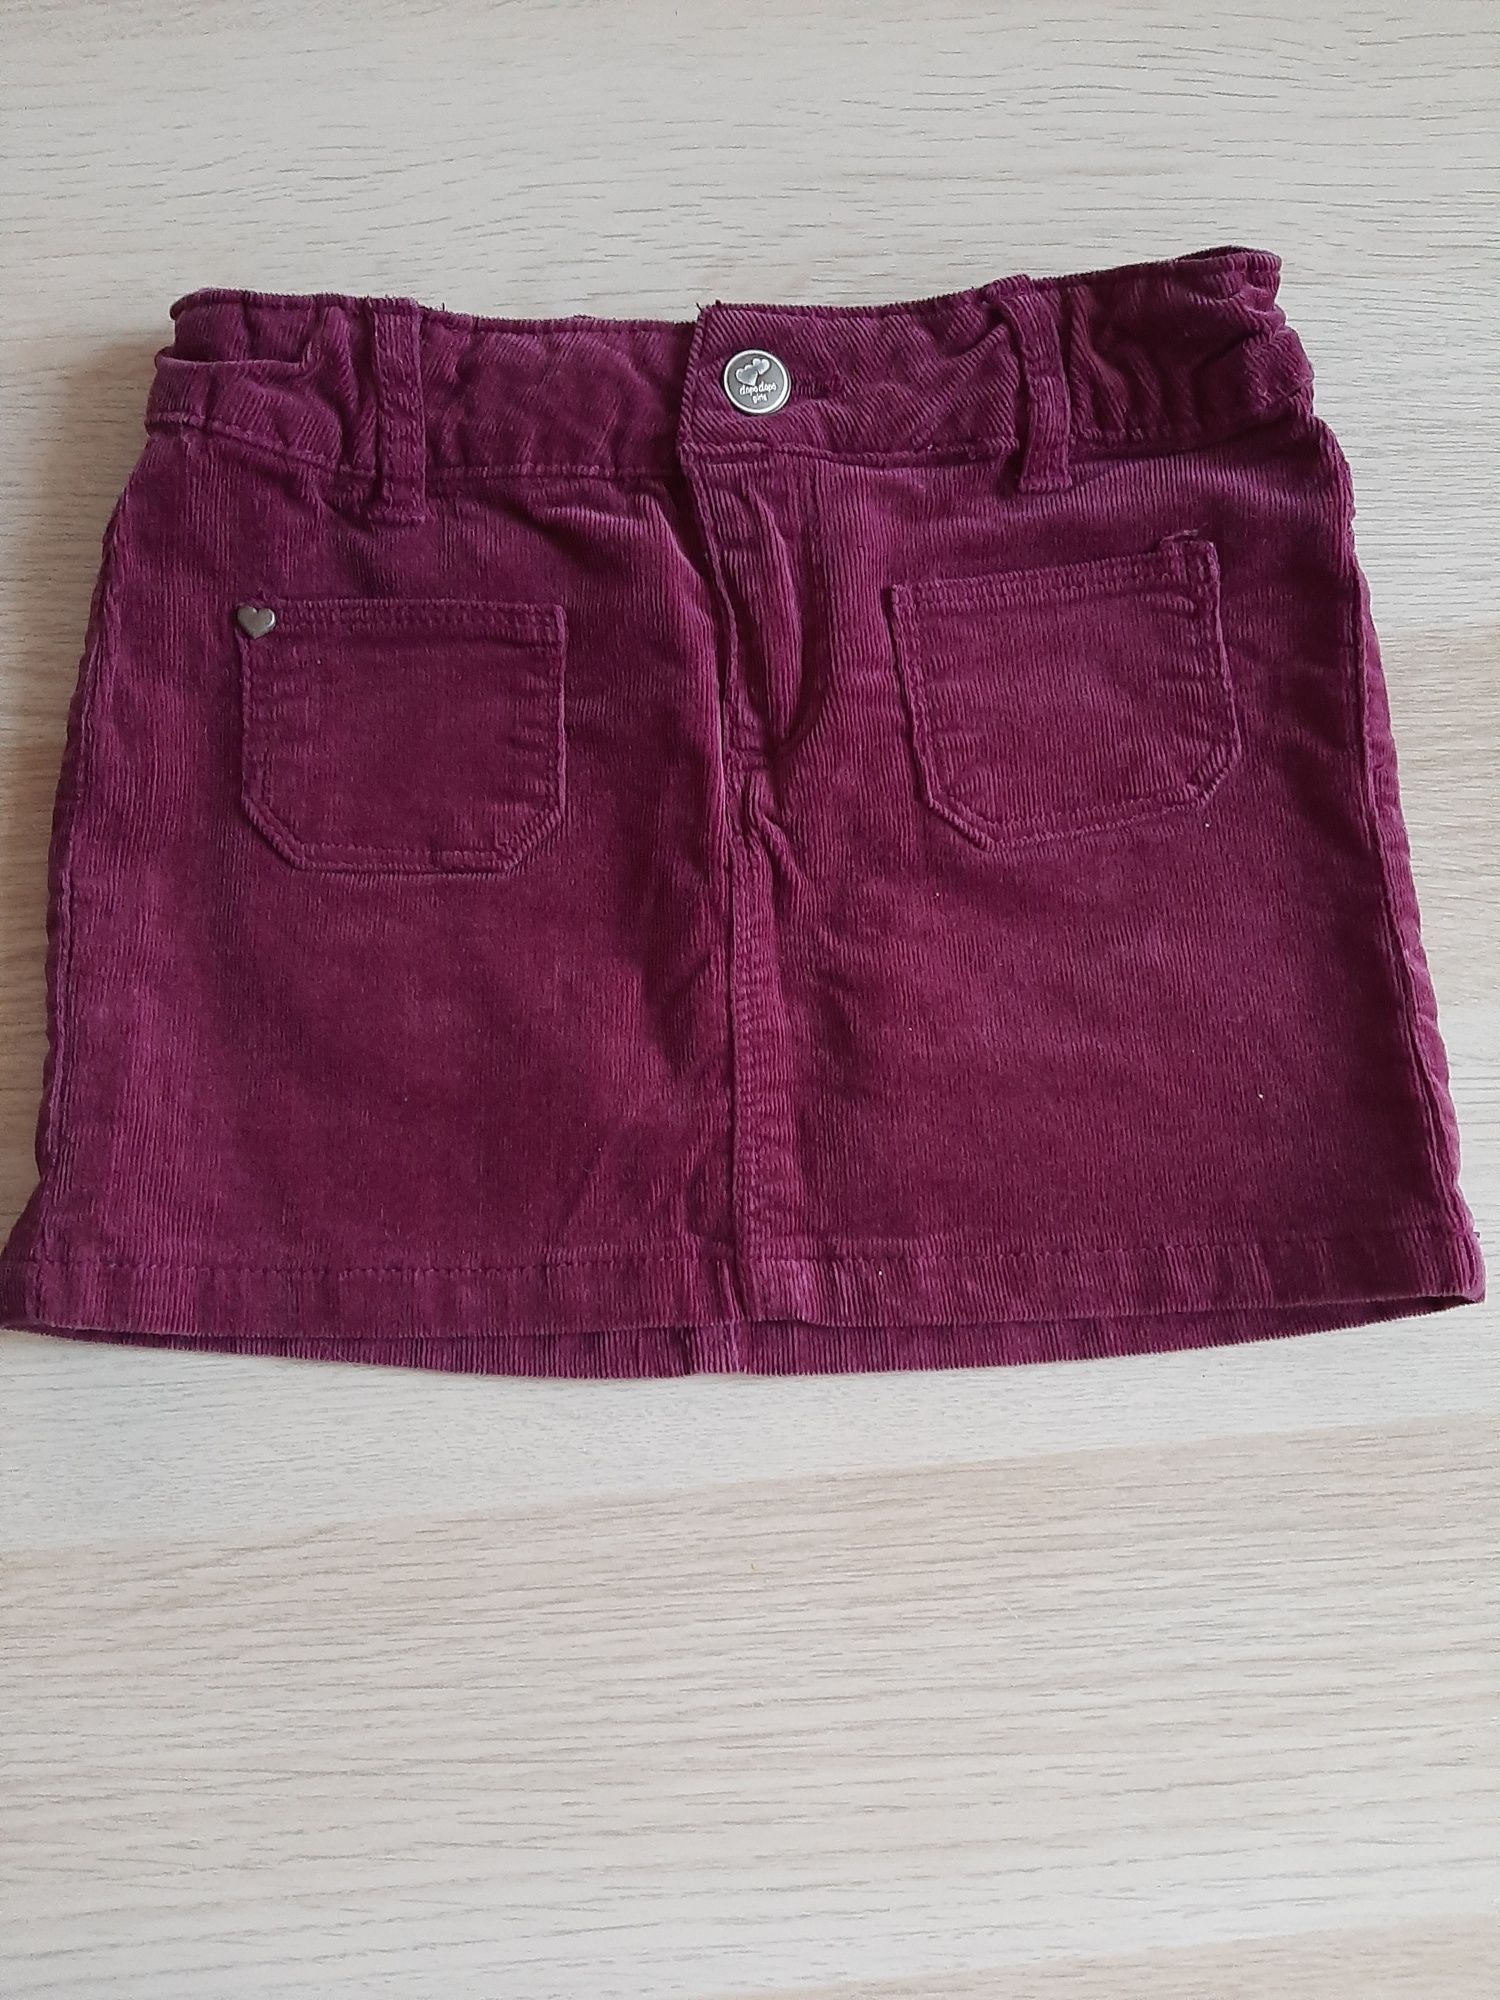 Spodniczka jeans oraz spódniczka sztruks